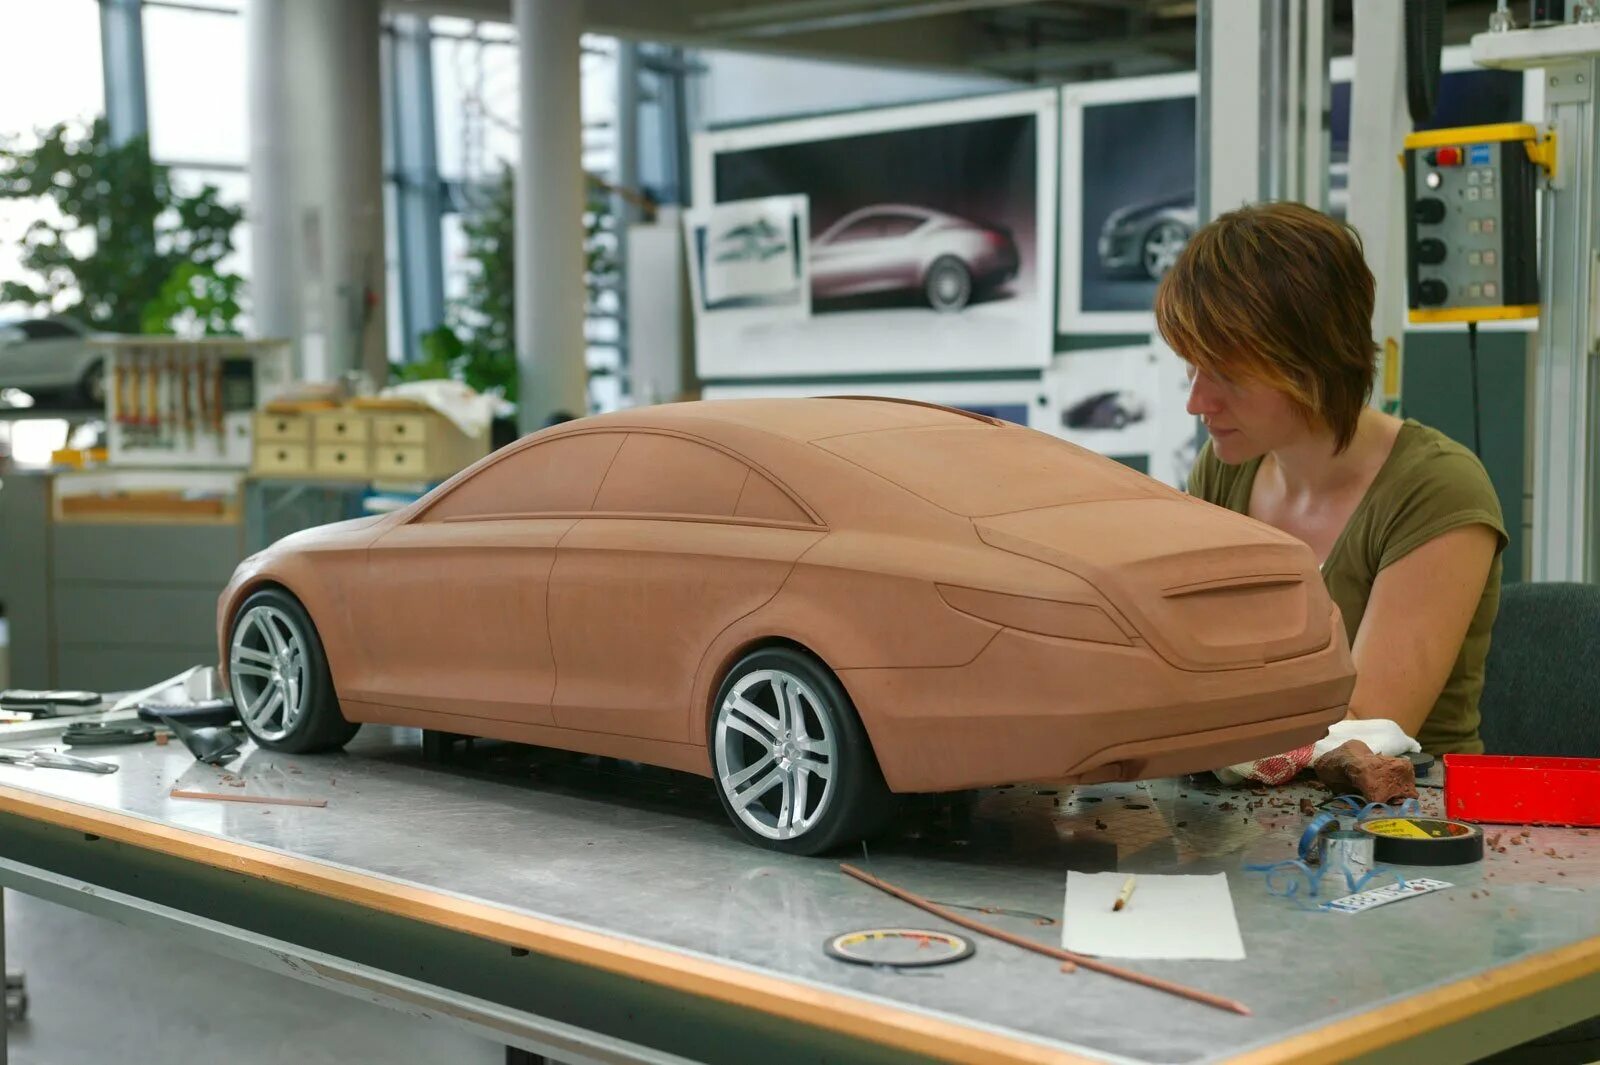 3d моделирование в автопромышленности. Муляж автомобиля. Пластилиновые макеты автомобилей. Моделирование автомобилей. Машины которые можно собирать